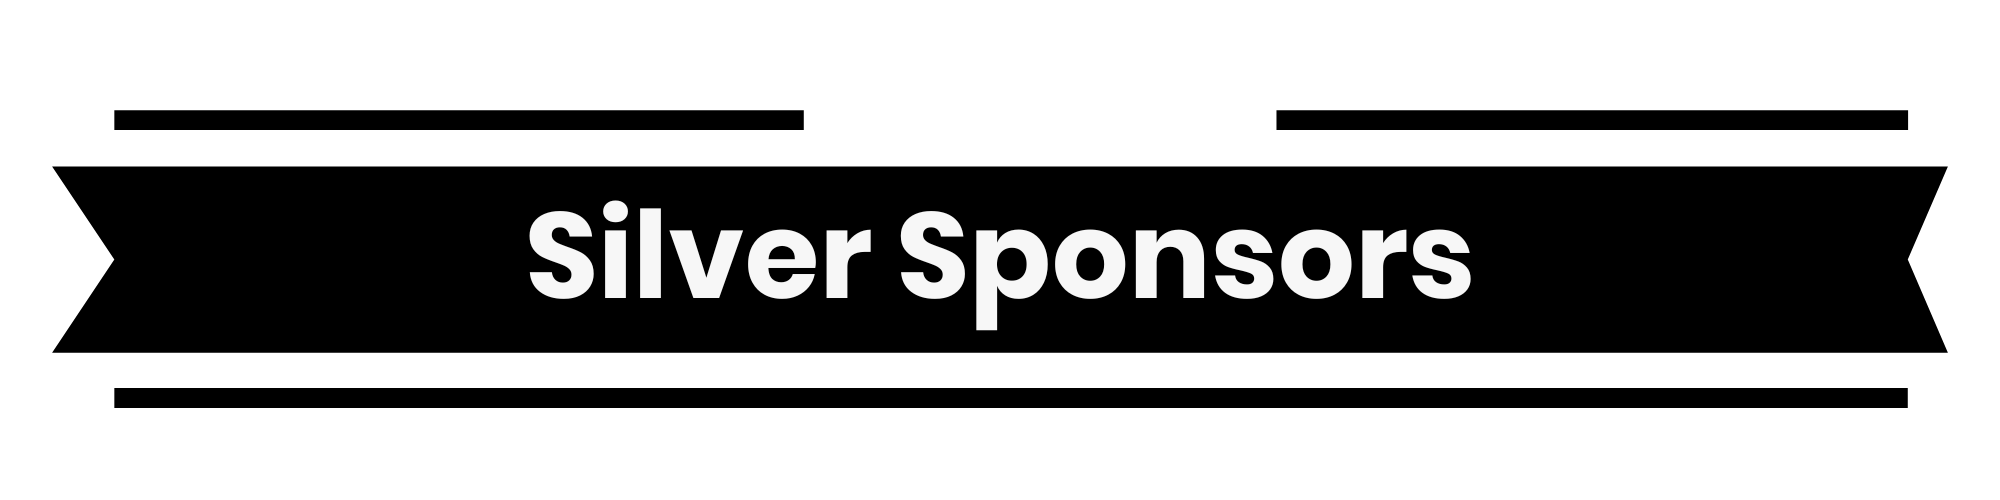 silver sponsors banner